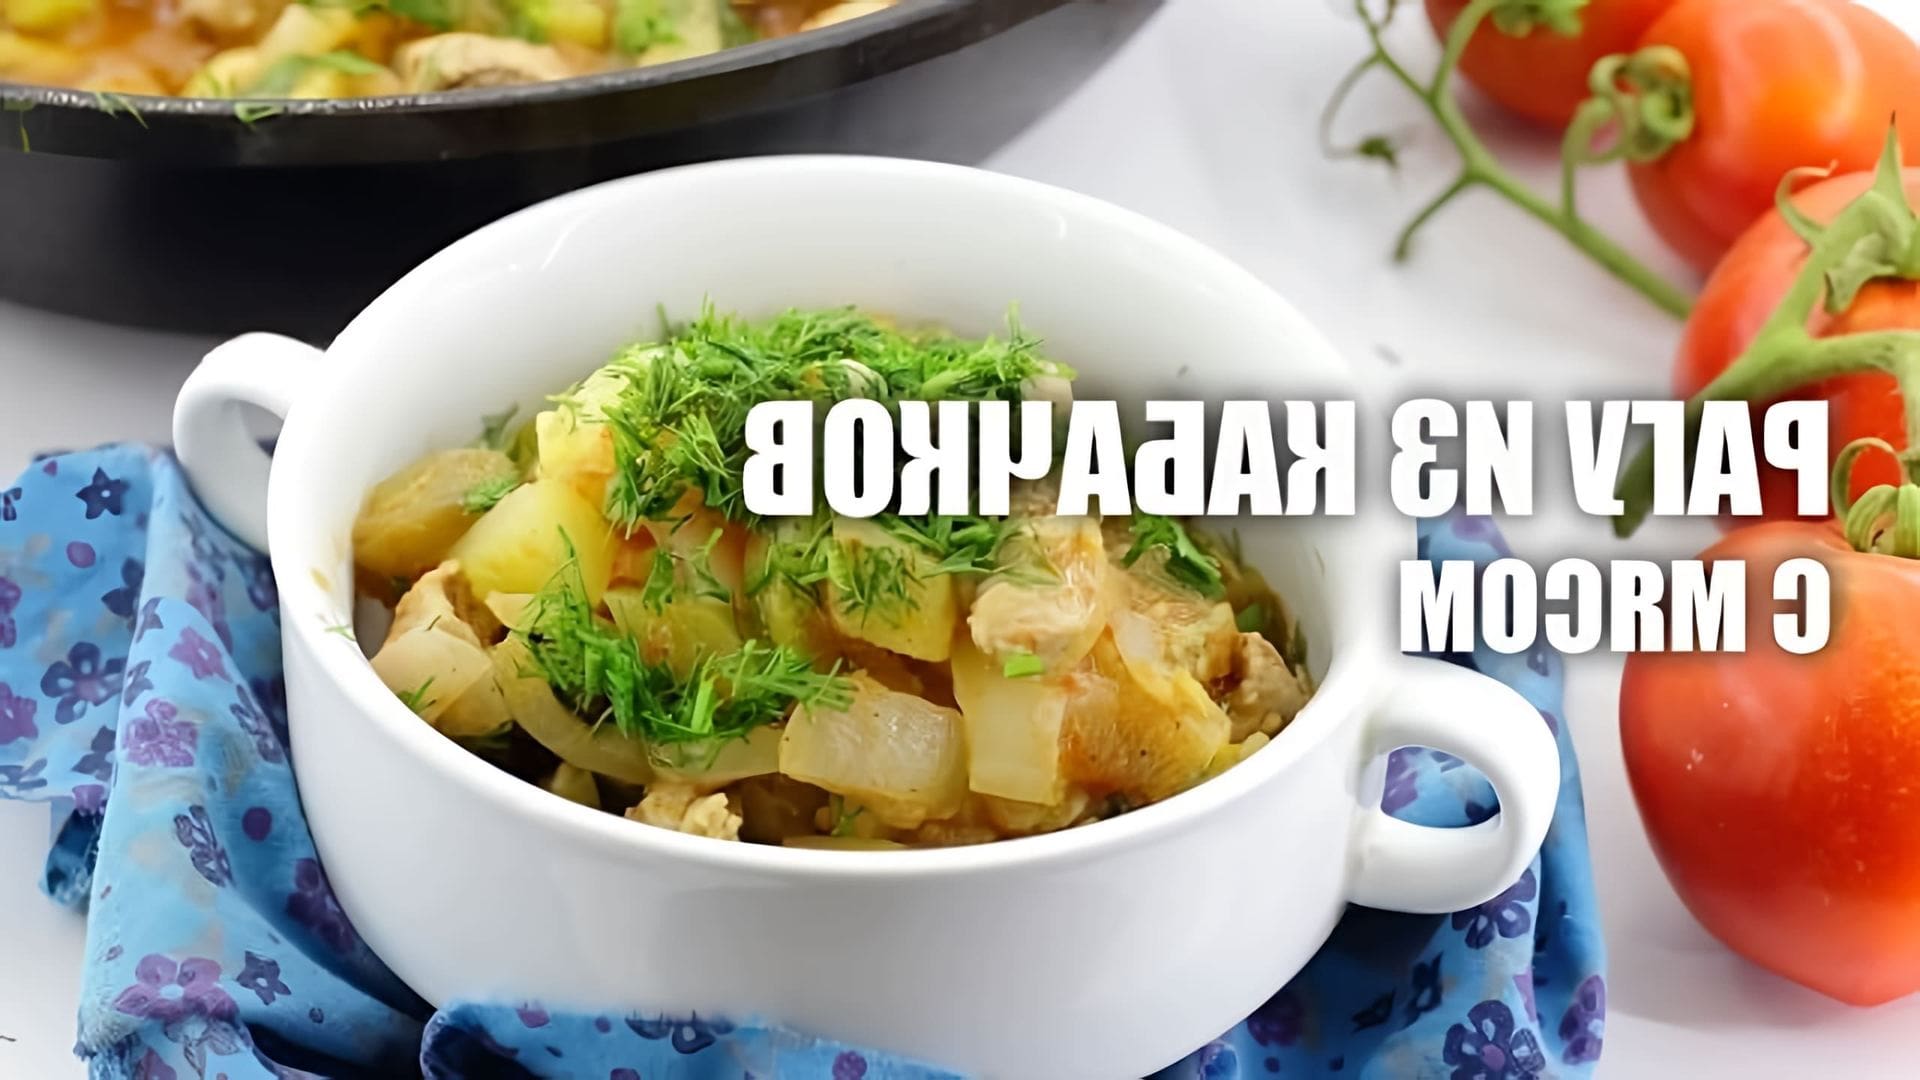 В этом видео представлен рецепт рагу из кабачков с мясом